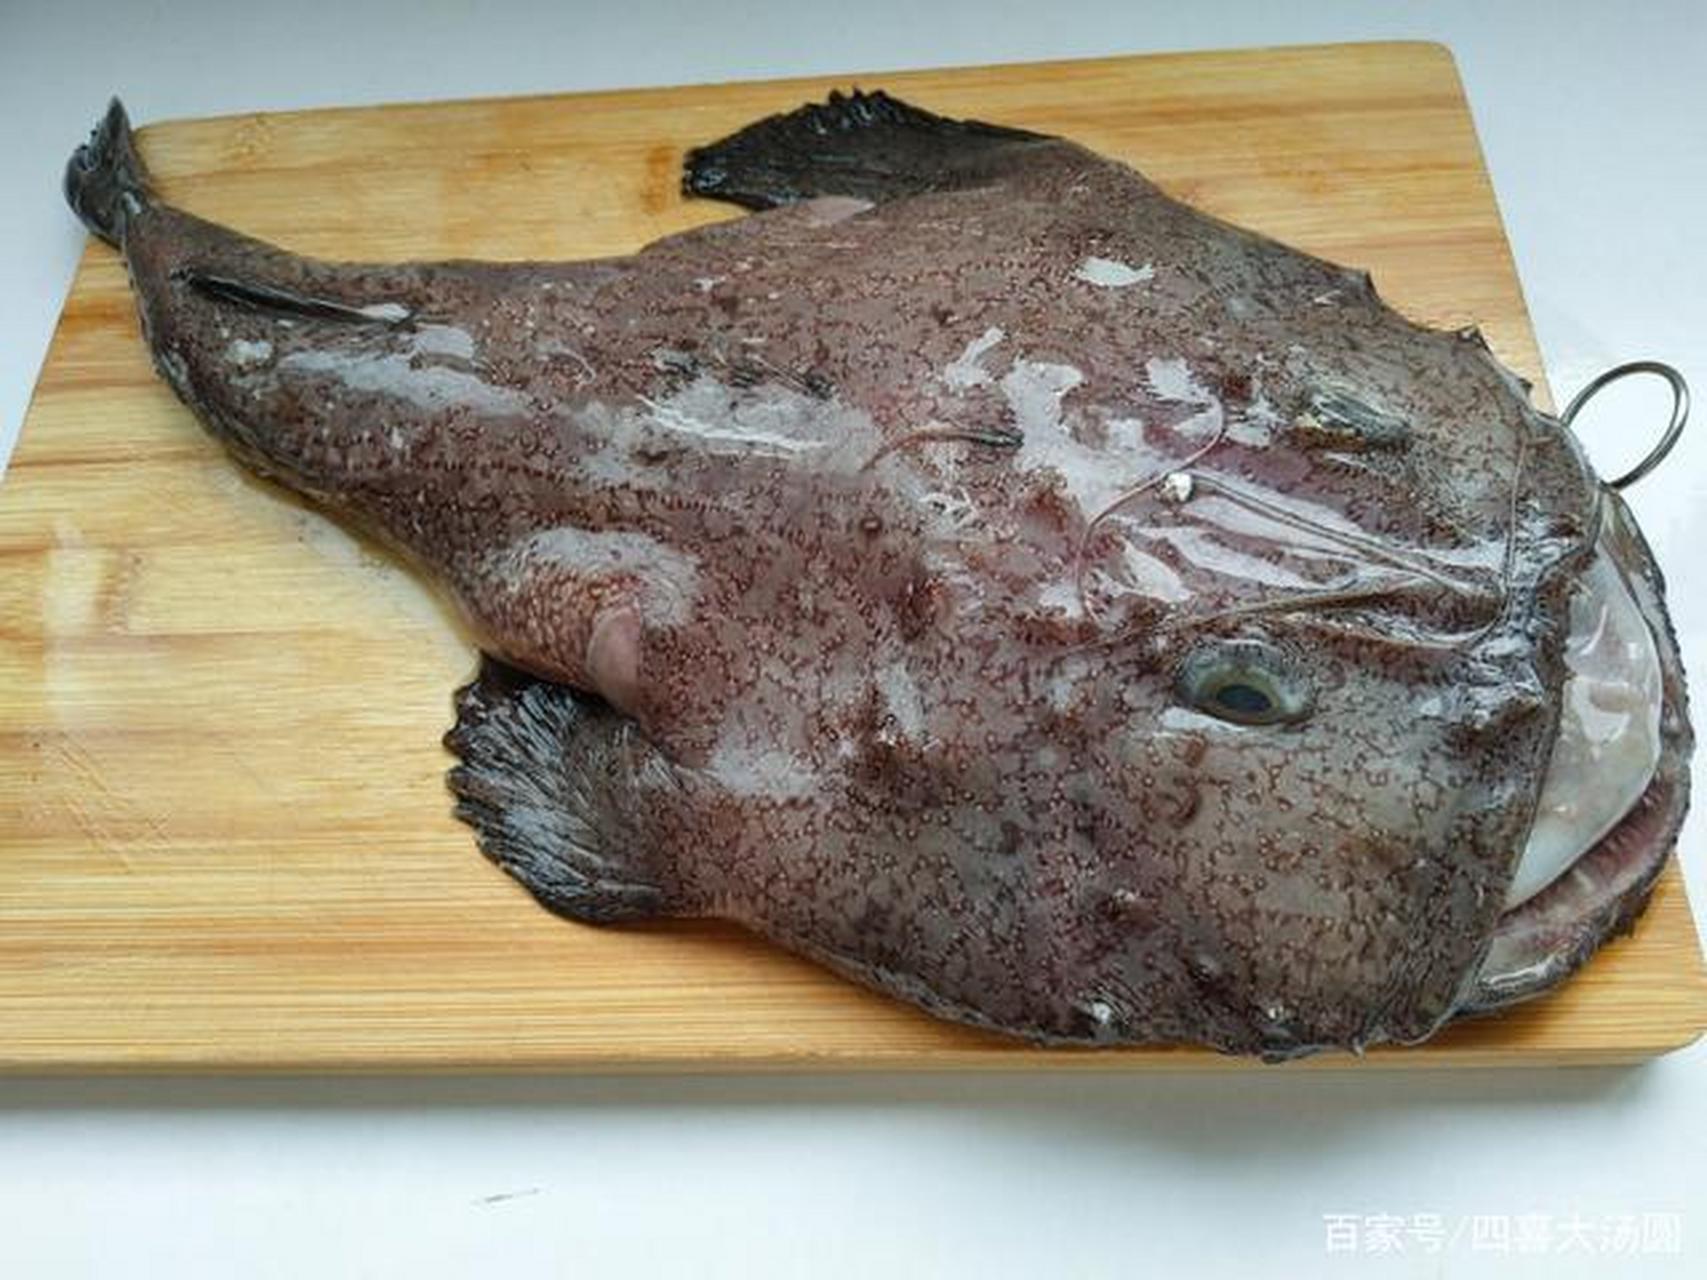 今天出去游玩,在浙江台州椒江区买的一条深海魔鬼鱼,老板娘要价6元